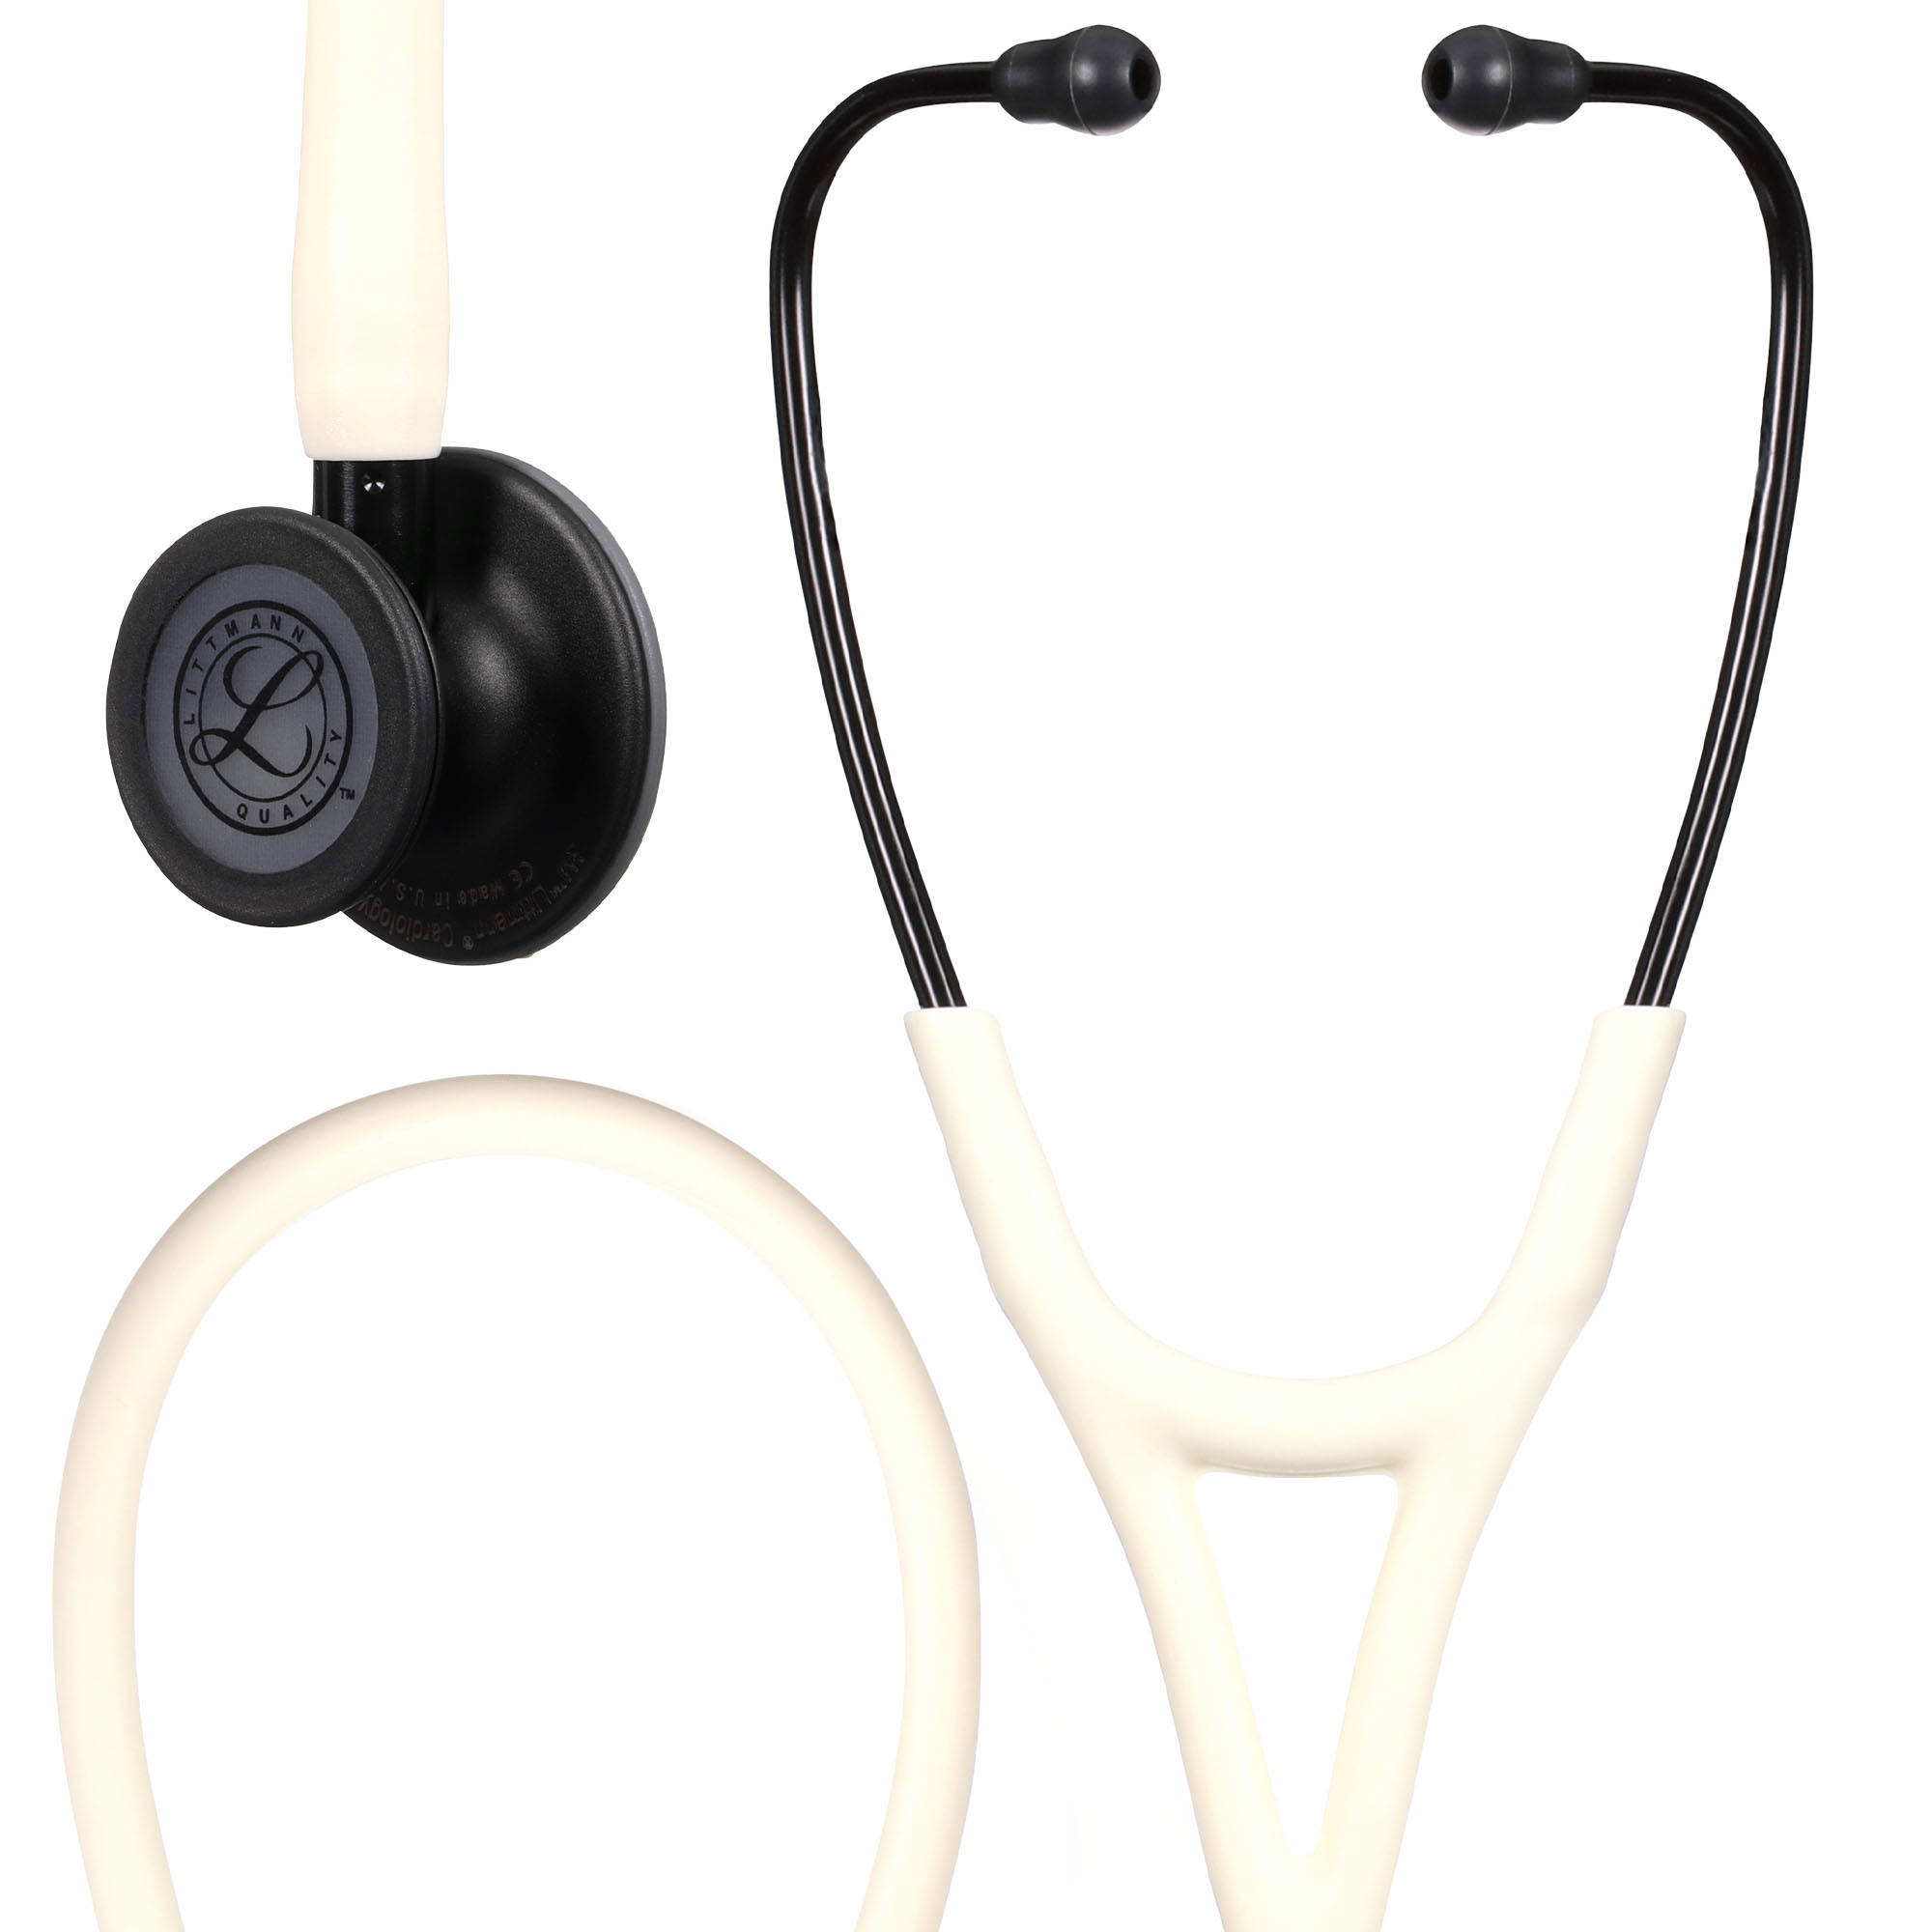 3M™ Littmann® Cardiology Dual IV™ stethoscoop - zwart - satin finish - zwart mat - 1 st